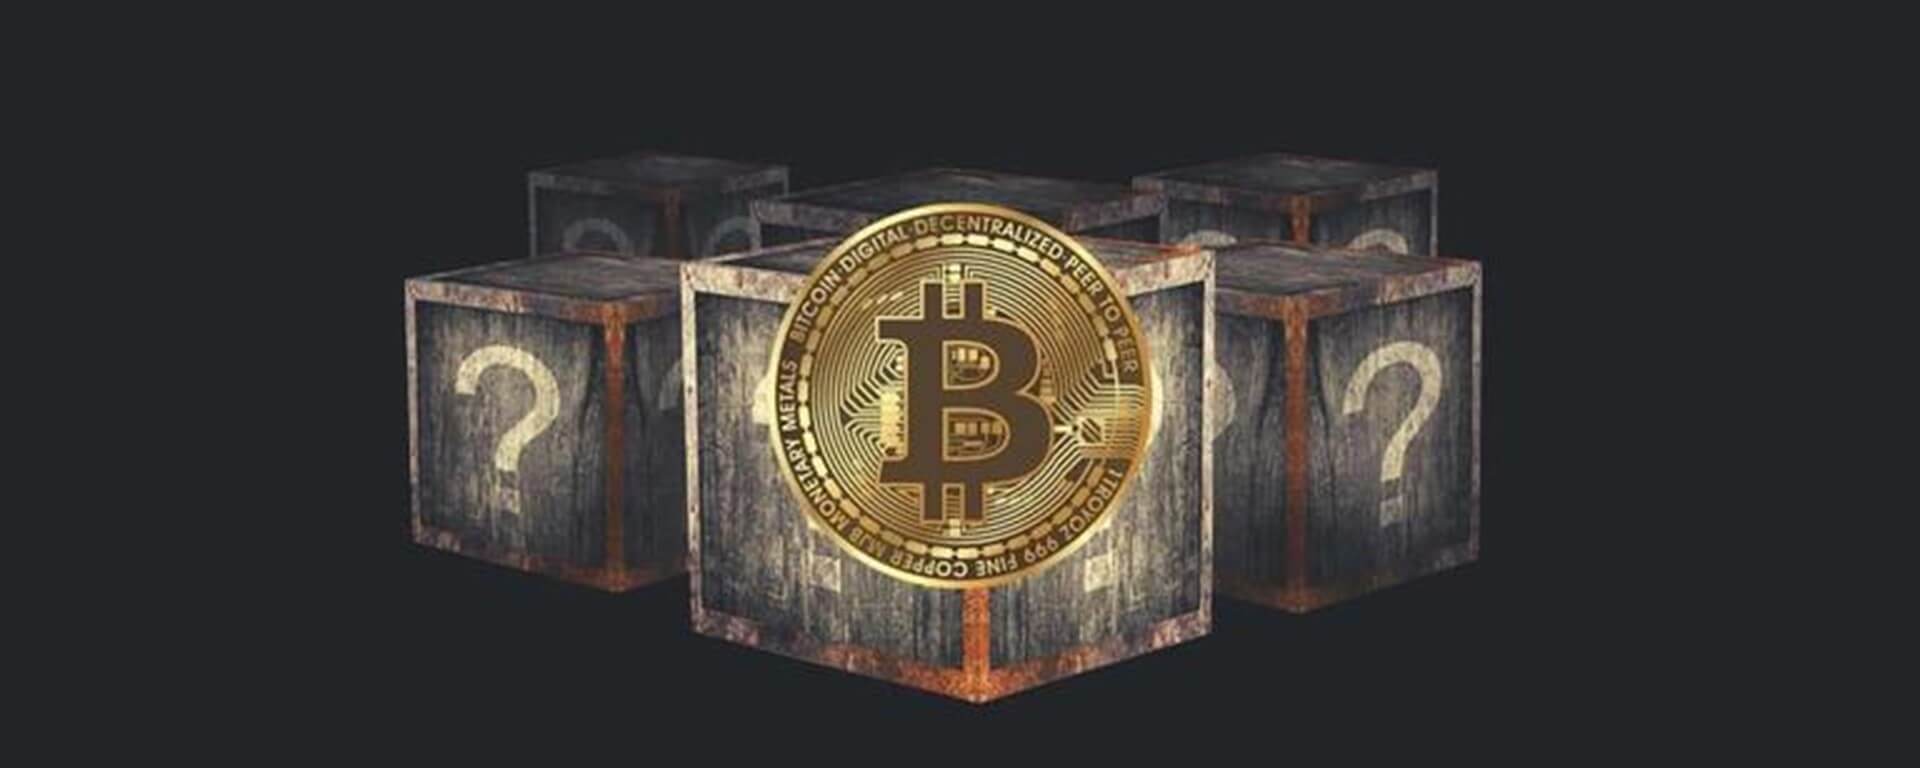 50 2010 bitcoin